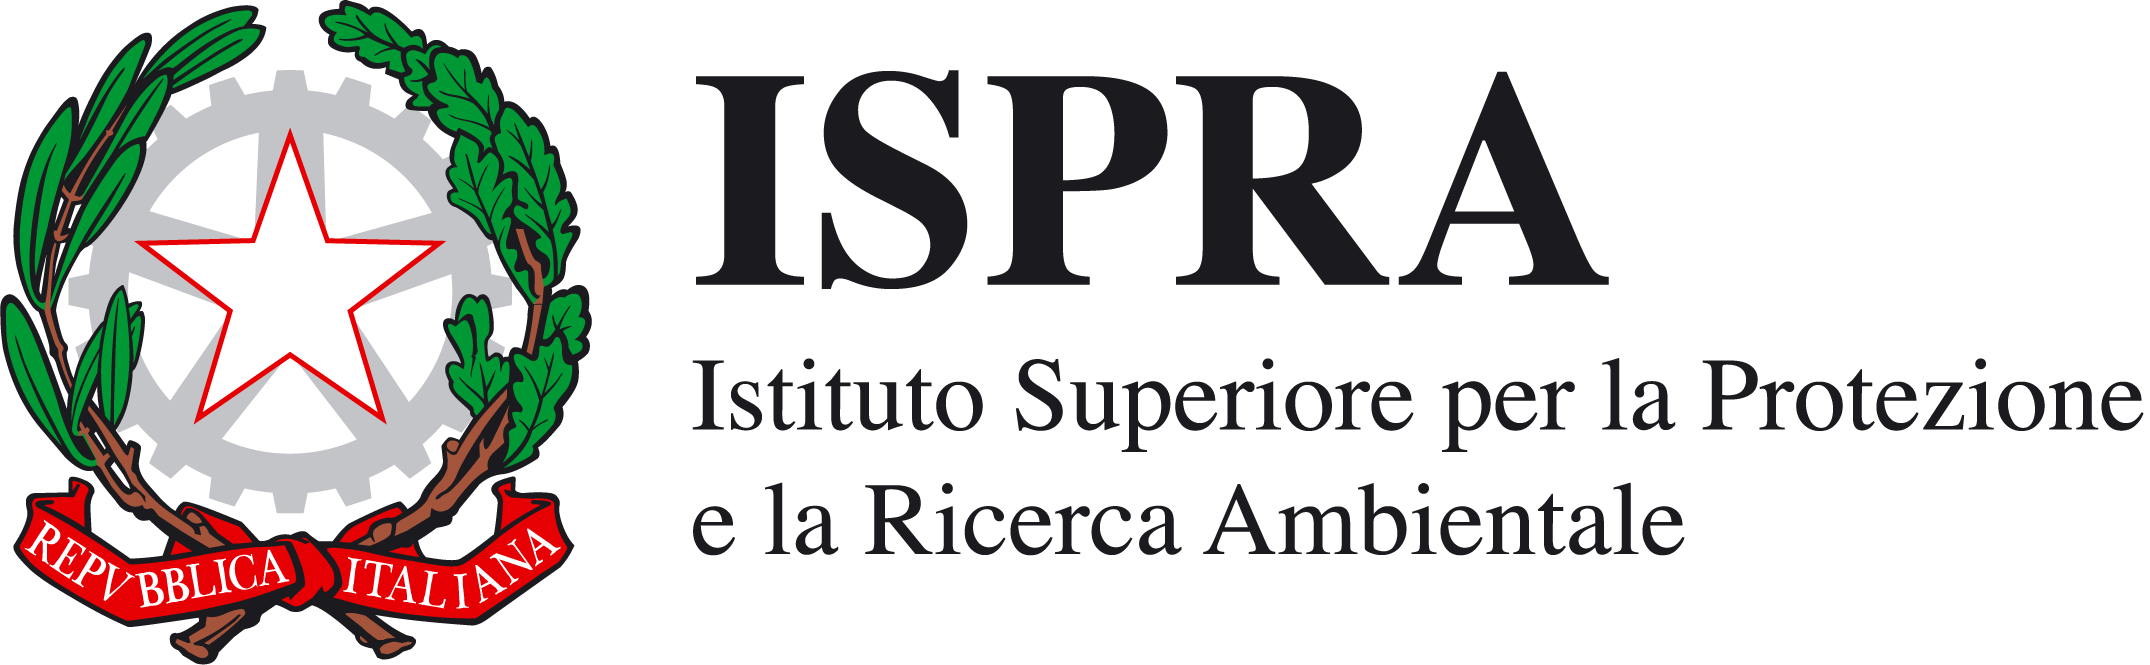 Fidc Lombardia. La Regione ha reso pubblico il parere Ispra sul calendario 2021-2022